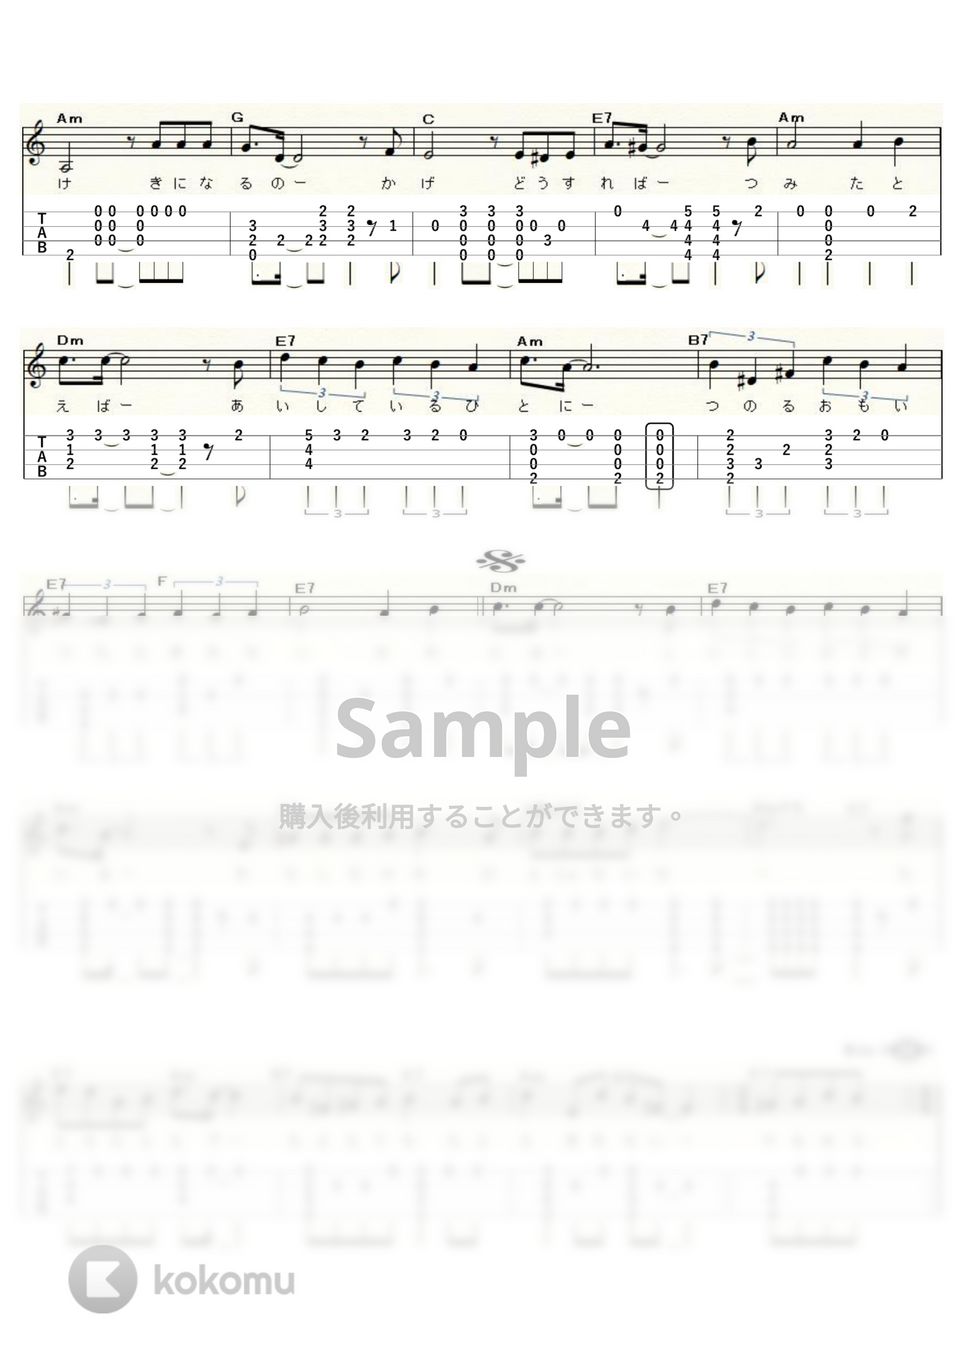 渡辺真知子 - たとえば…たとえば (ｳｸﾚﾚｿﾛ / Low-G / 中級～上級) by ukulelepapa